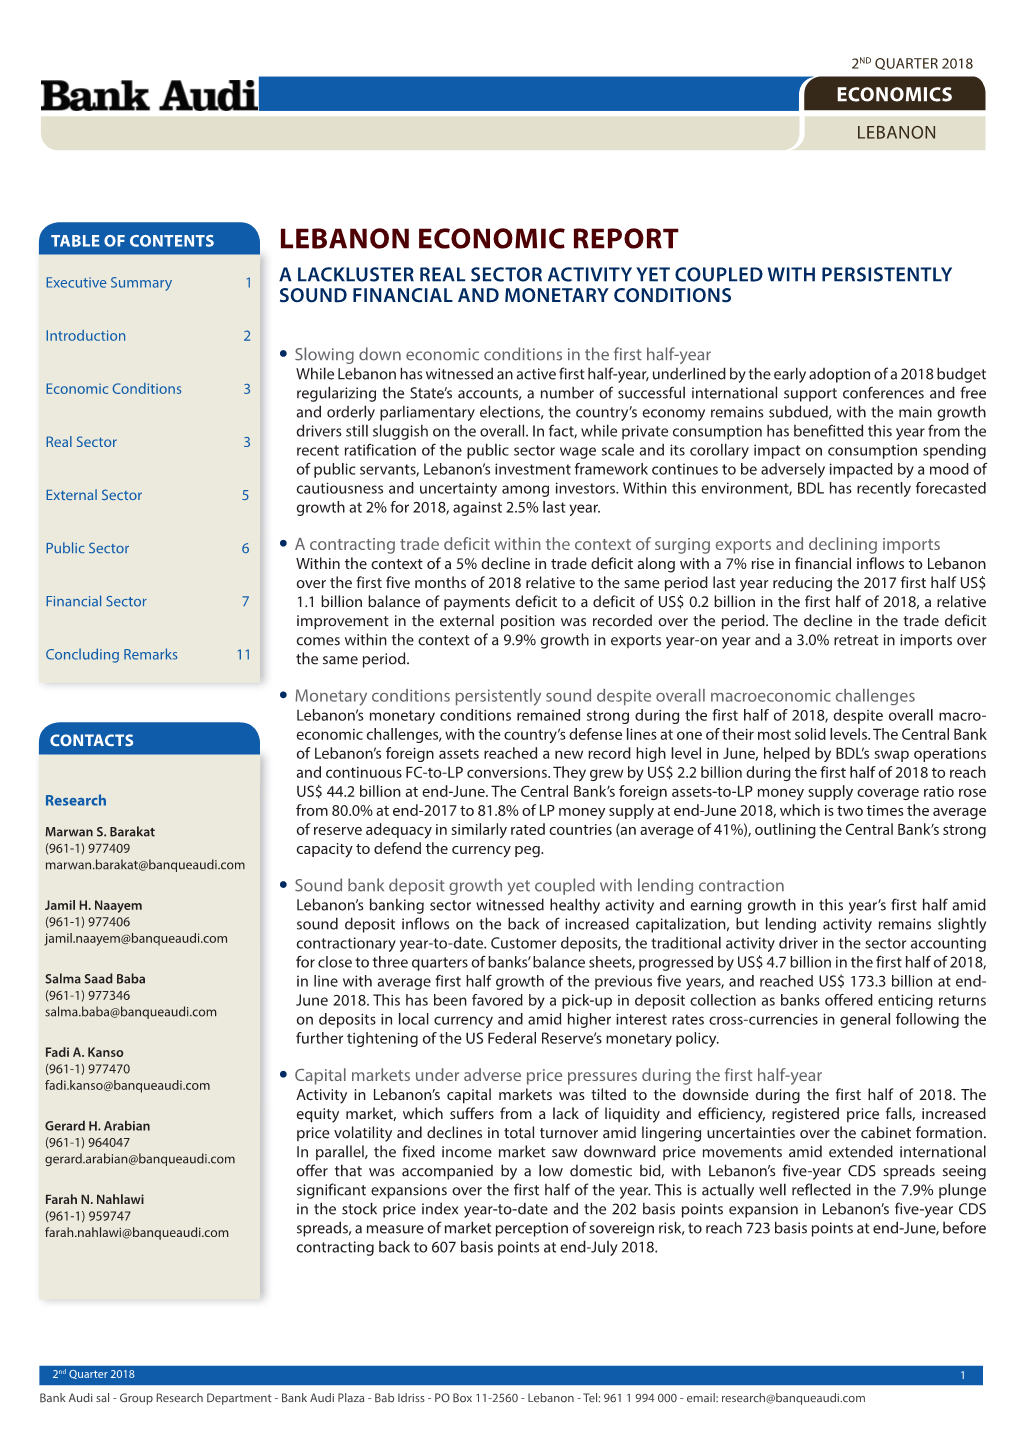 Lebanon Economic Report